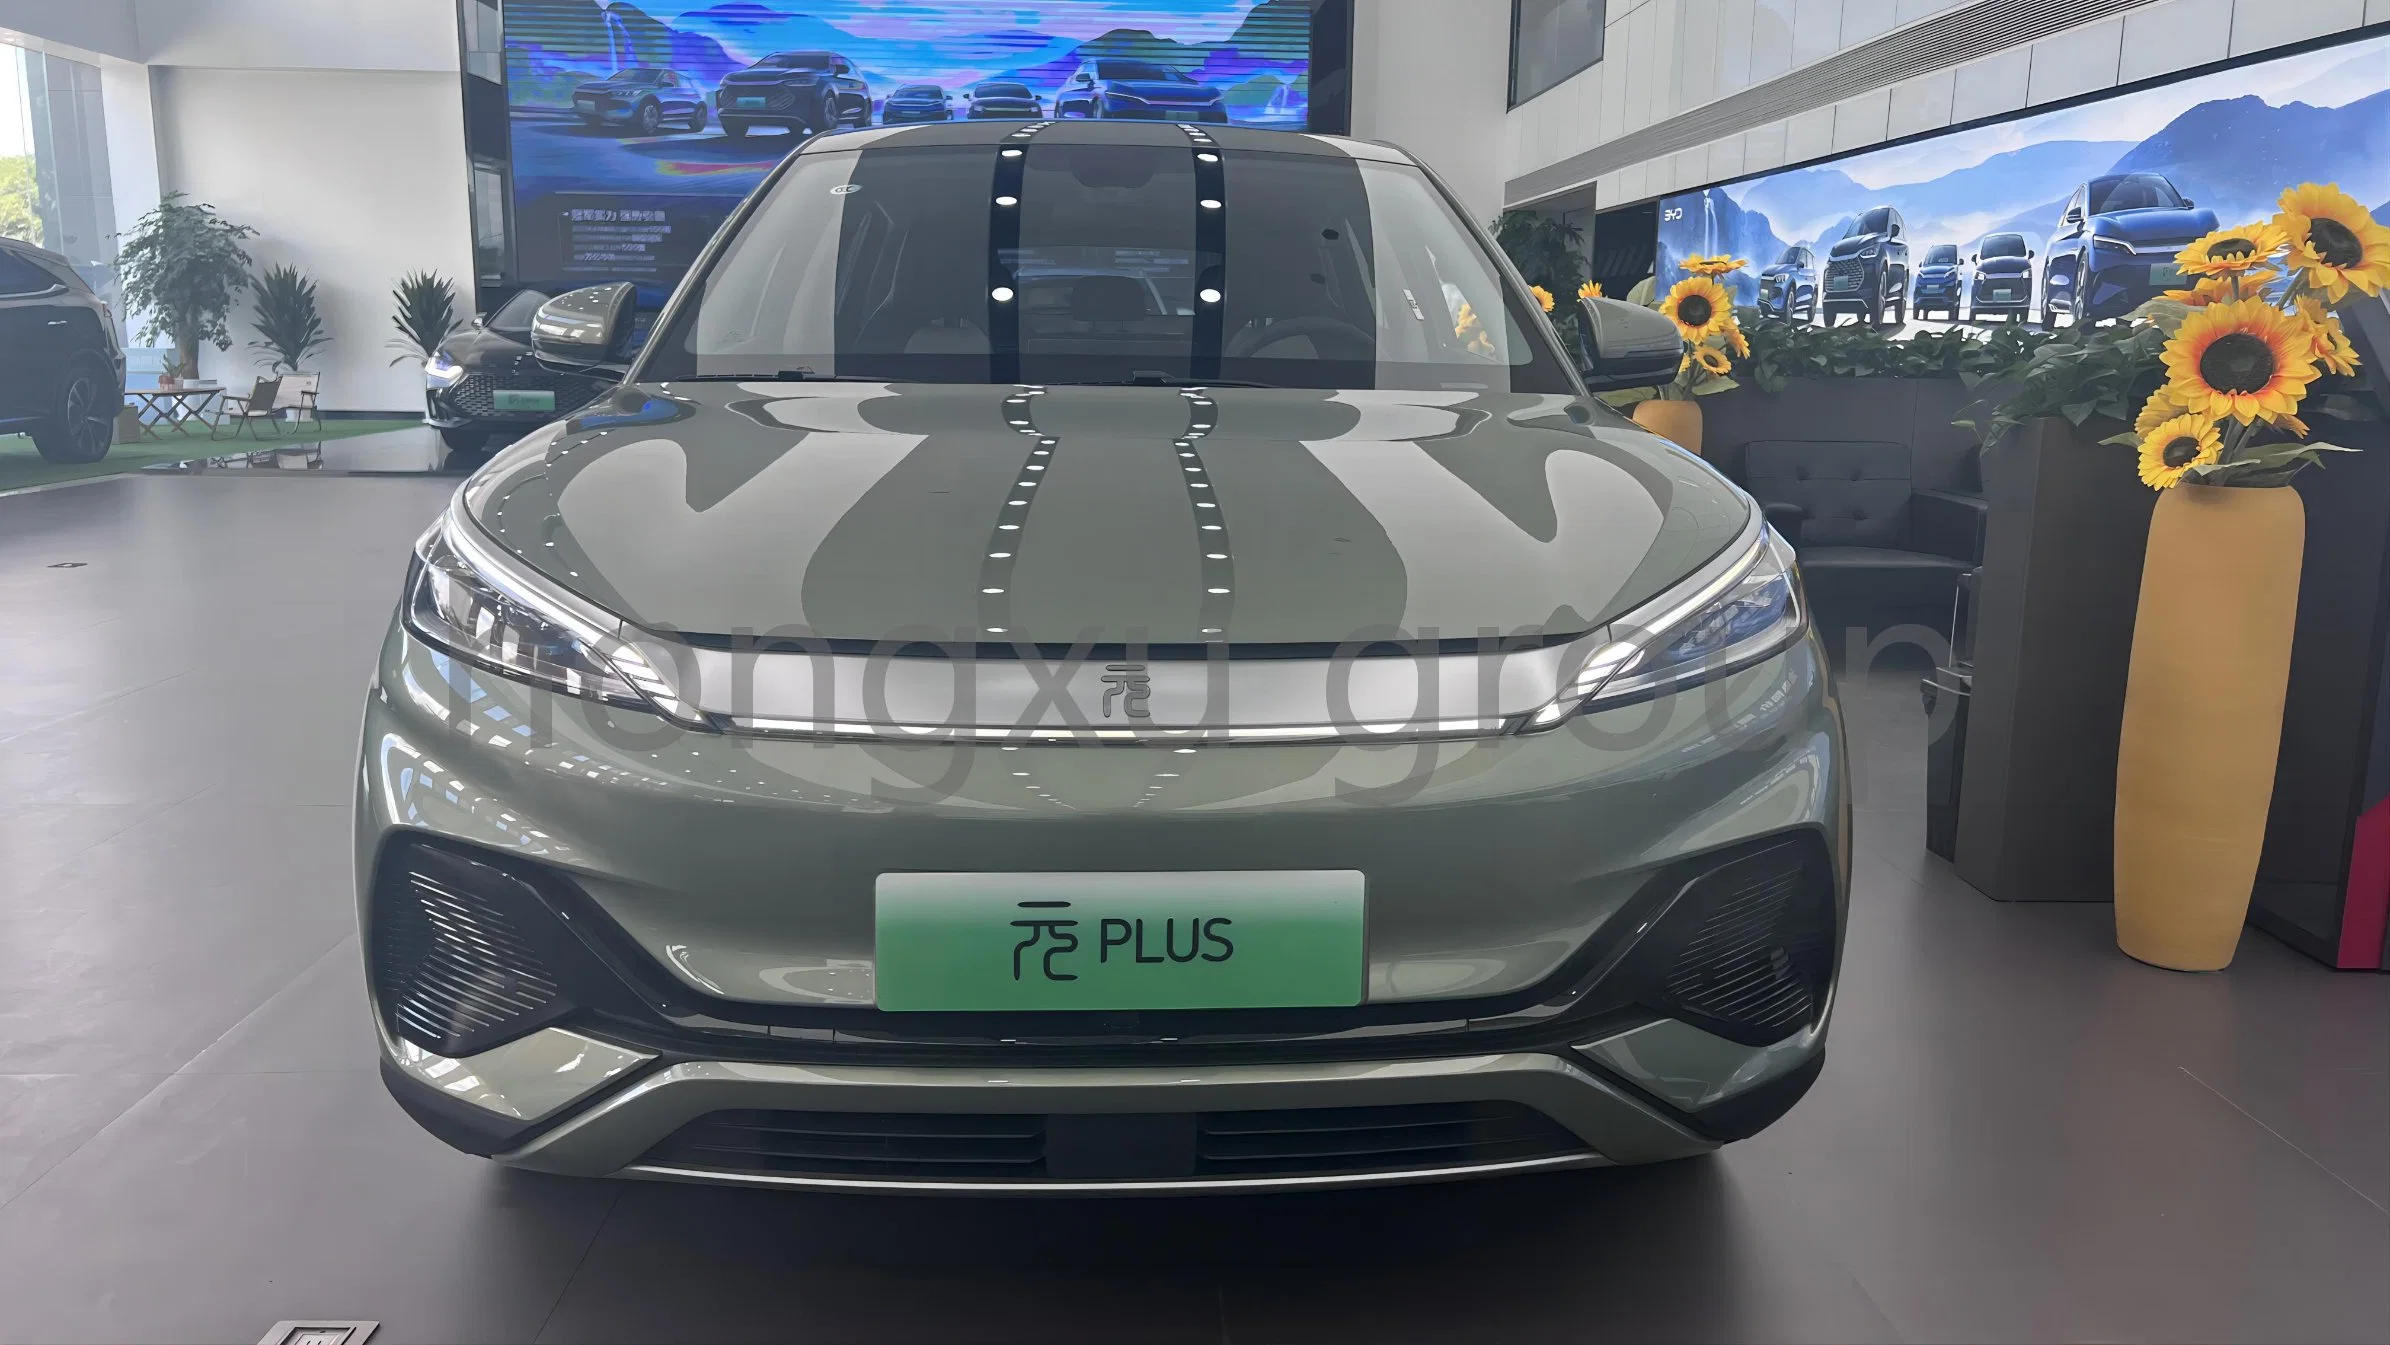 Byd Yuan Plus 510km Carro Usado de Luxo com Ar Condicionado Veículo Elétrico para SUV Pequeno Fabricado na China.